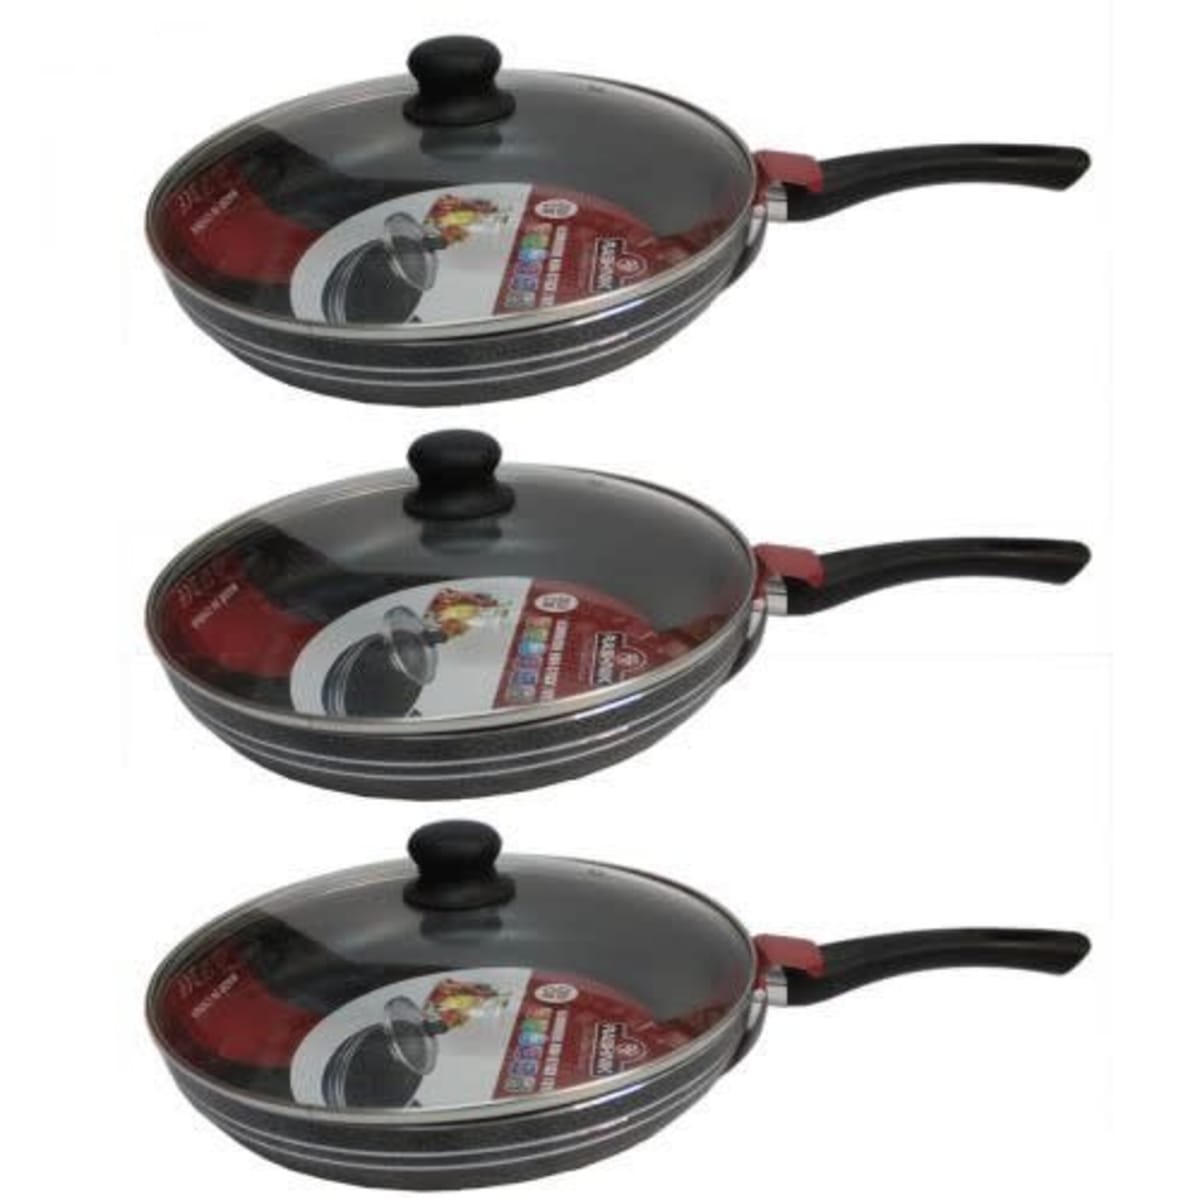 Frying Pans - 3 Pcs Set - 30cm + 28cm + 26cm